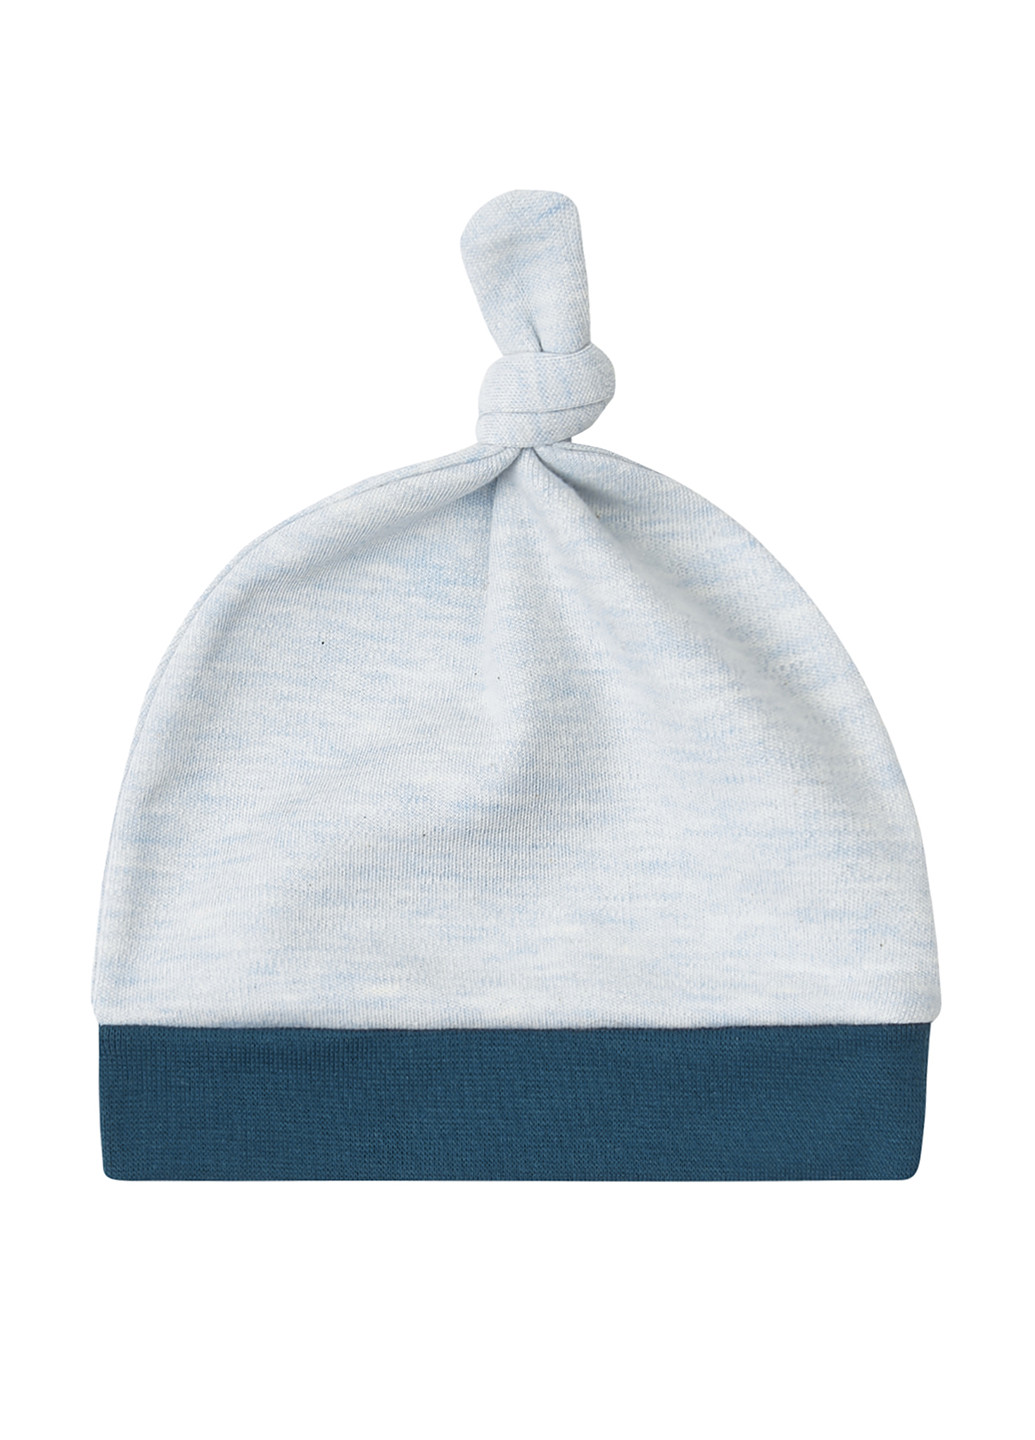 Голубой демисезонный комплект (шапка, распашонка, ползунки) Ляля